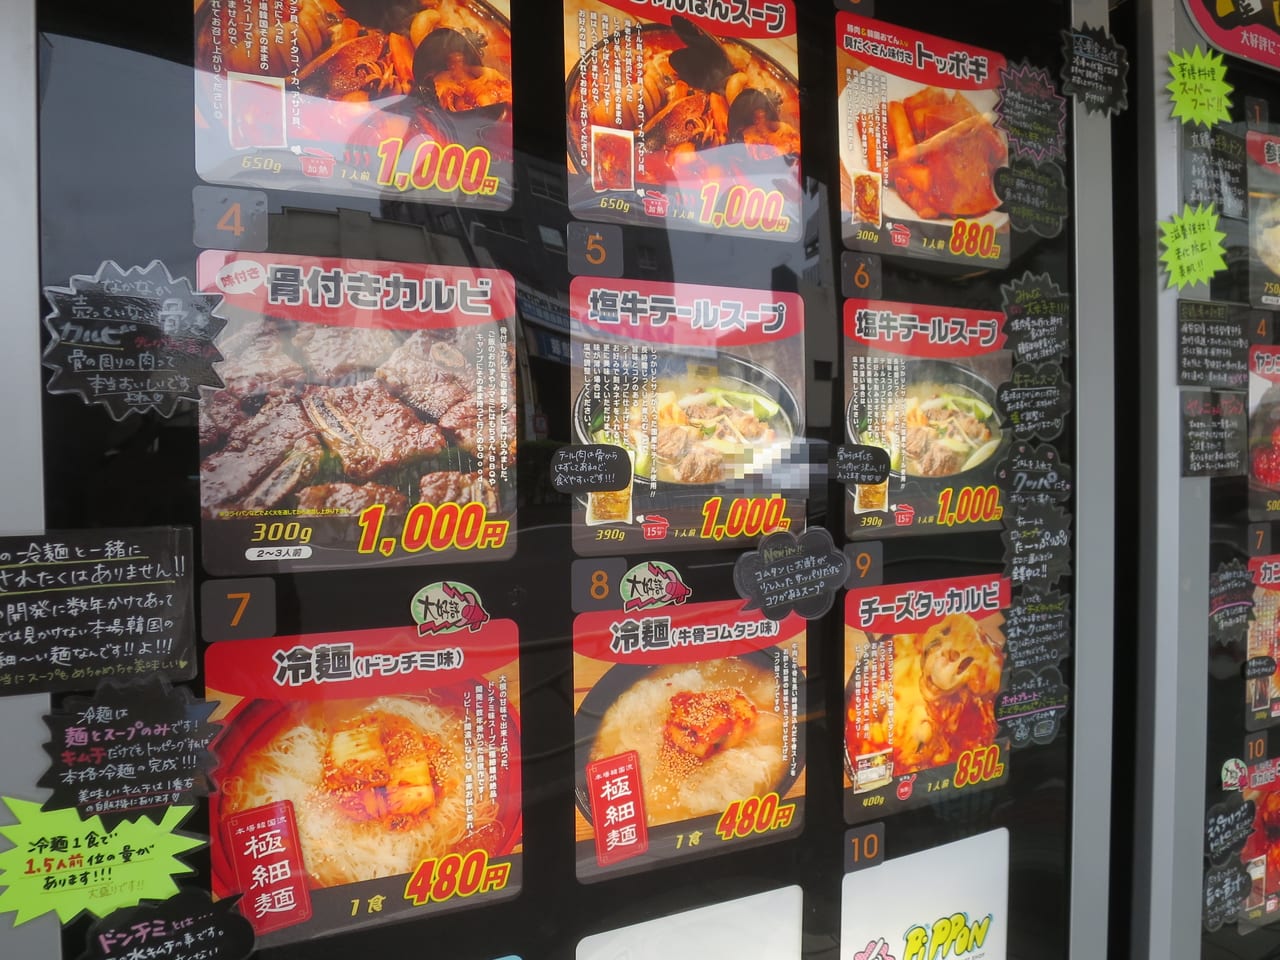 ピッポン韓国惣菜の自販機